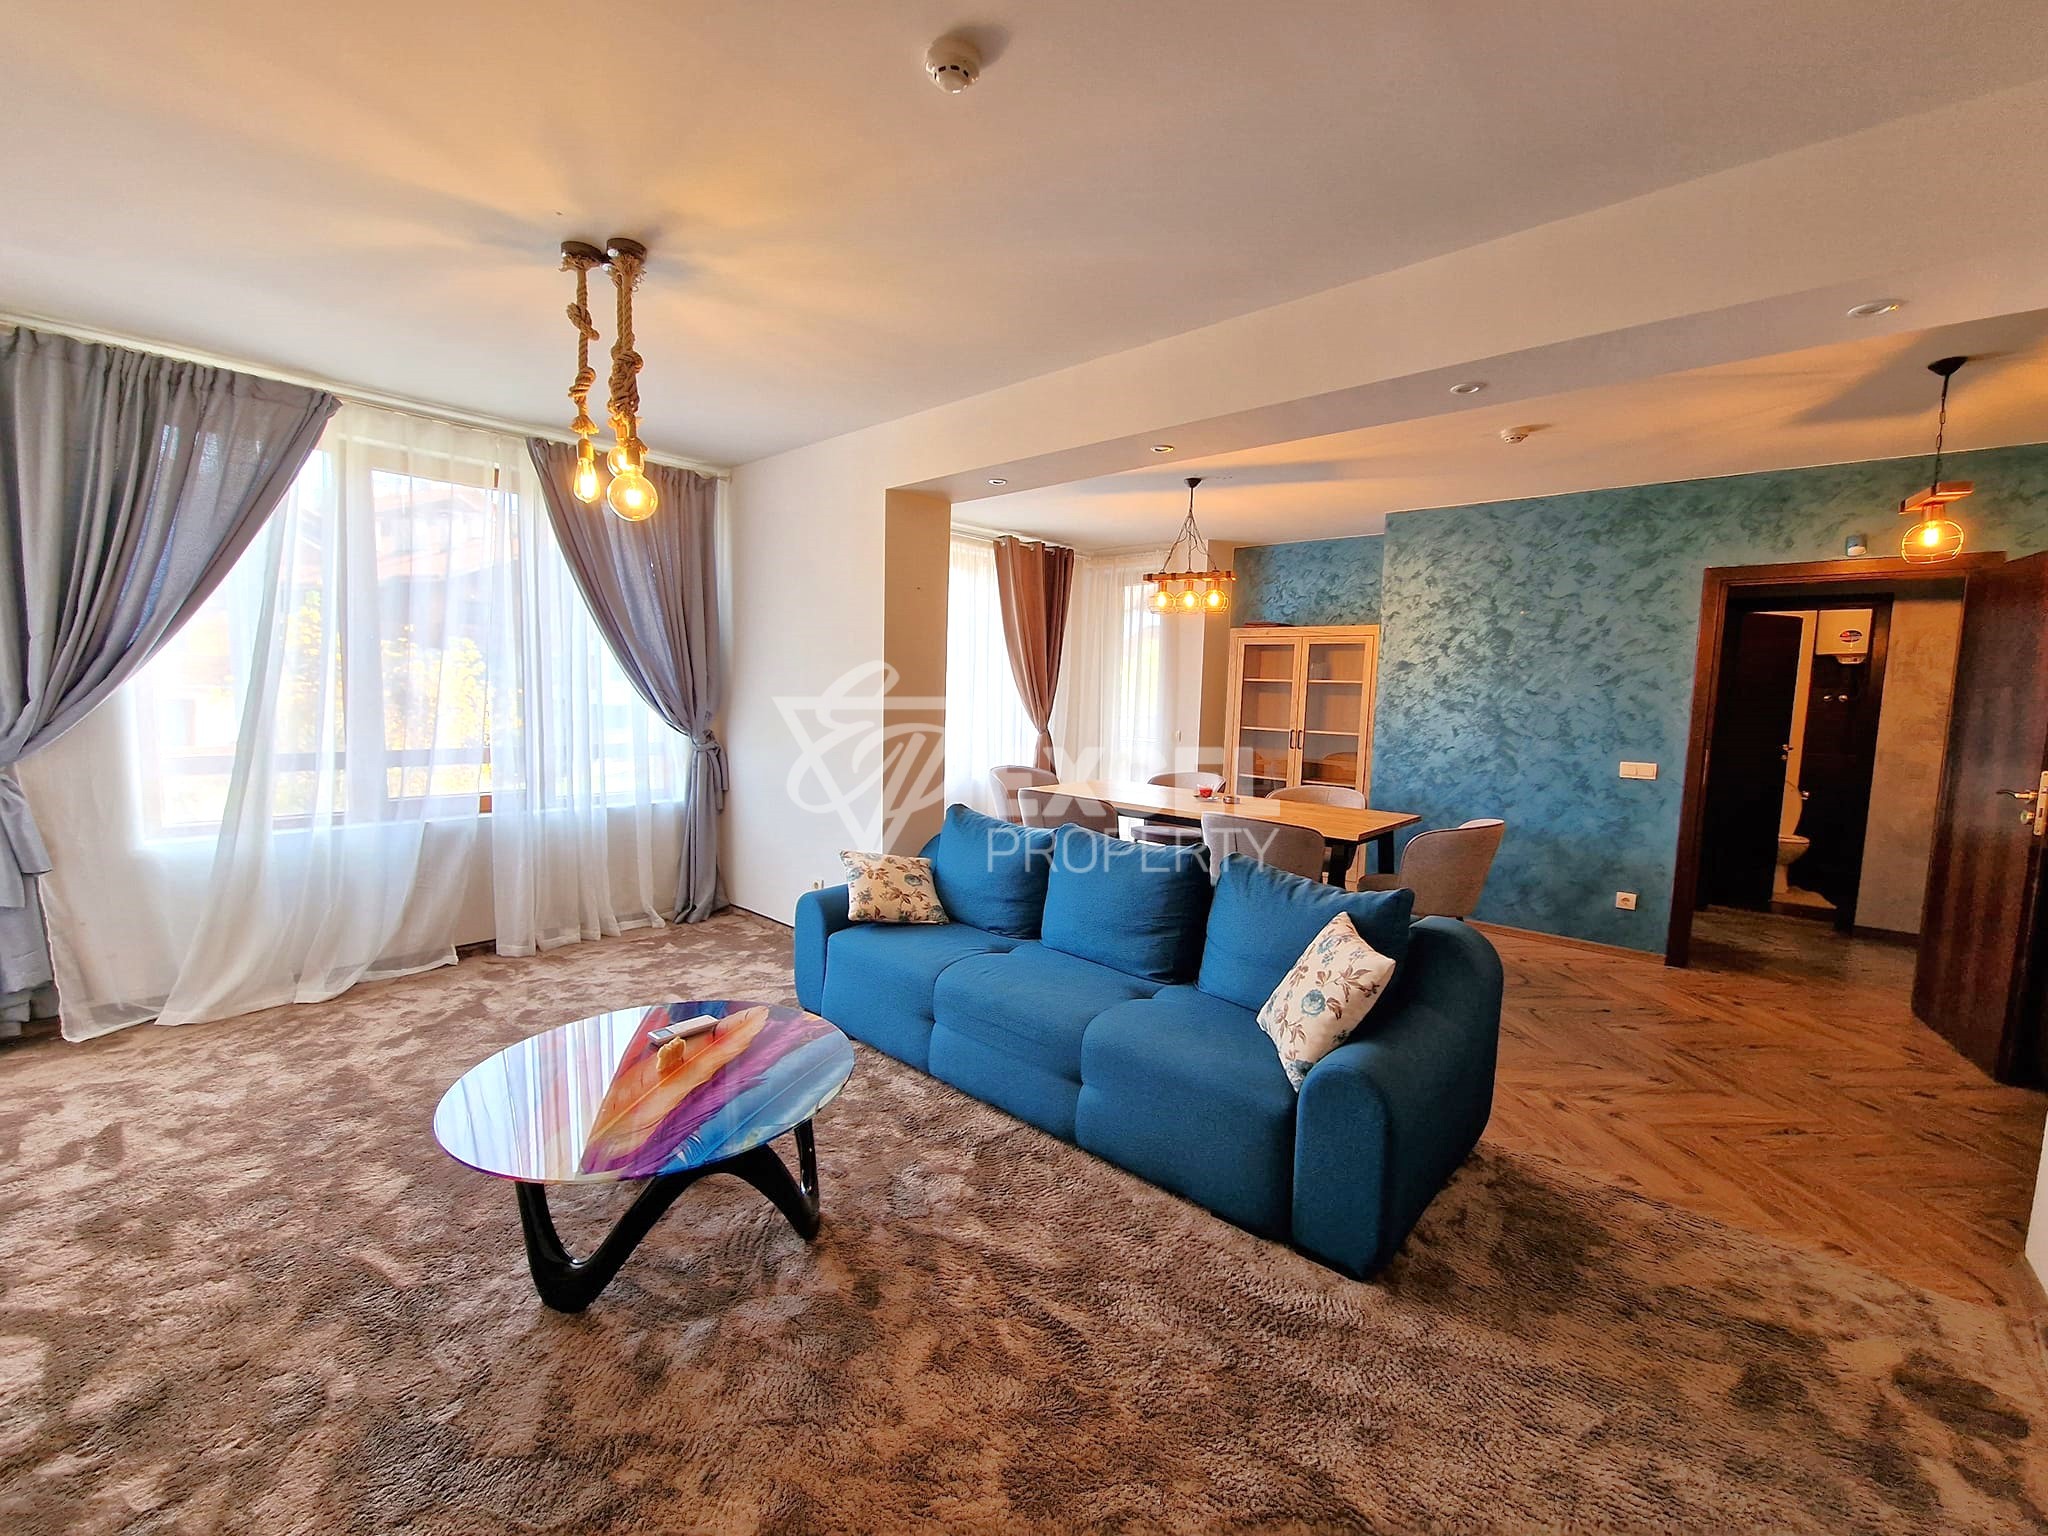 Тристаен апартамент с ново обзавеждане за продажба в Банско до комплекс Иван Рилски